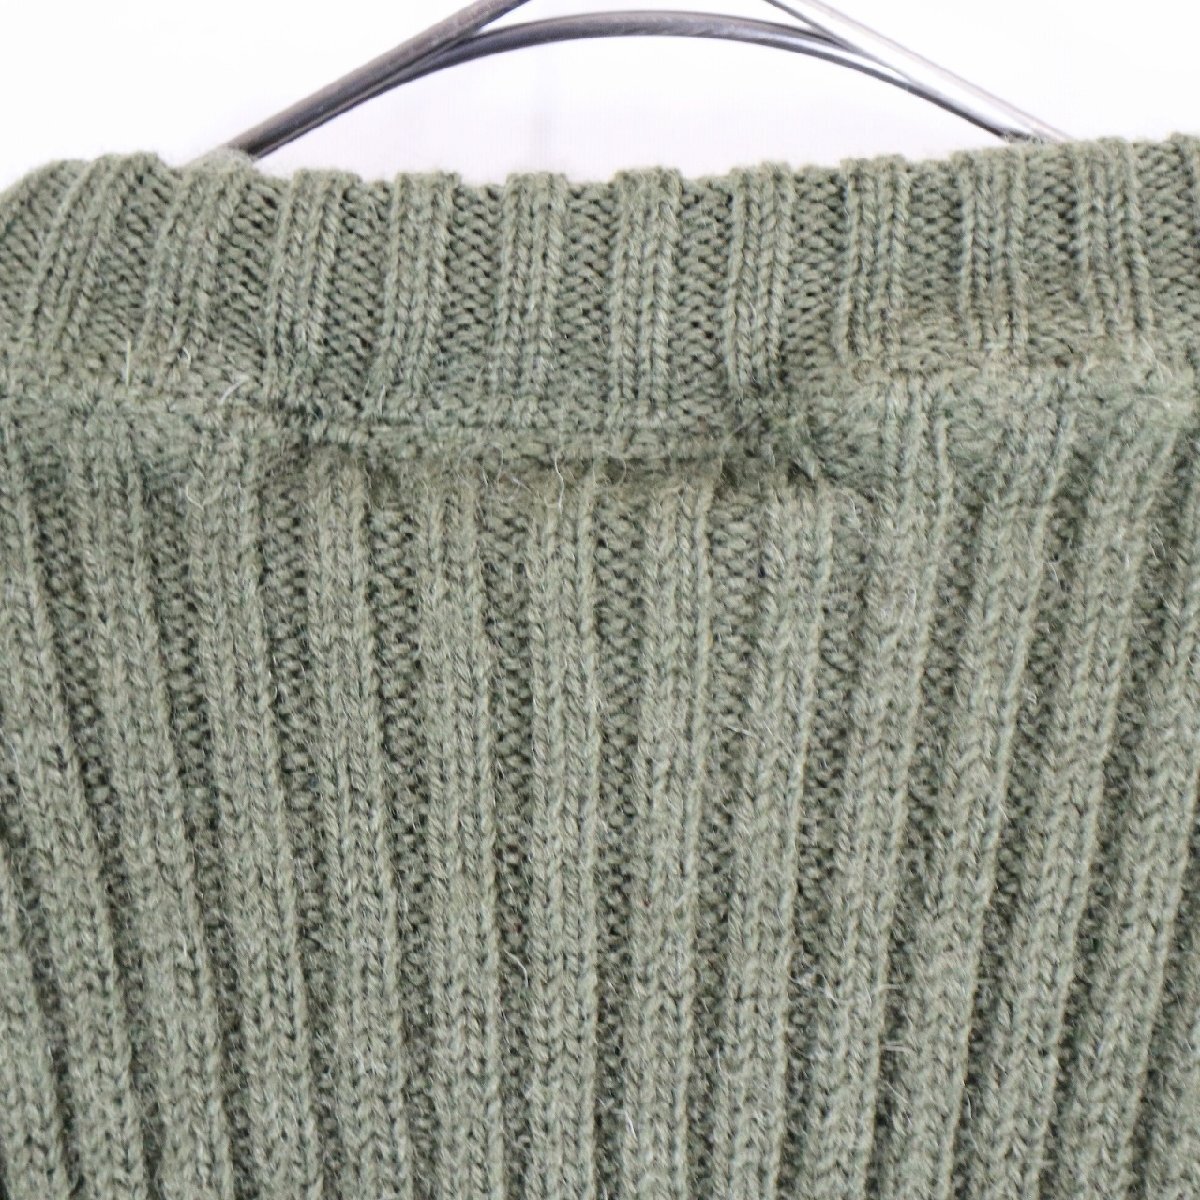  Англия производства commando свитер патрубок patch вязаный свитер милитари способ зеленый ( мужской 48 ) N2494 1 иен старт 